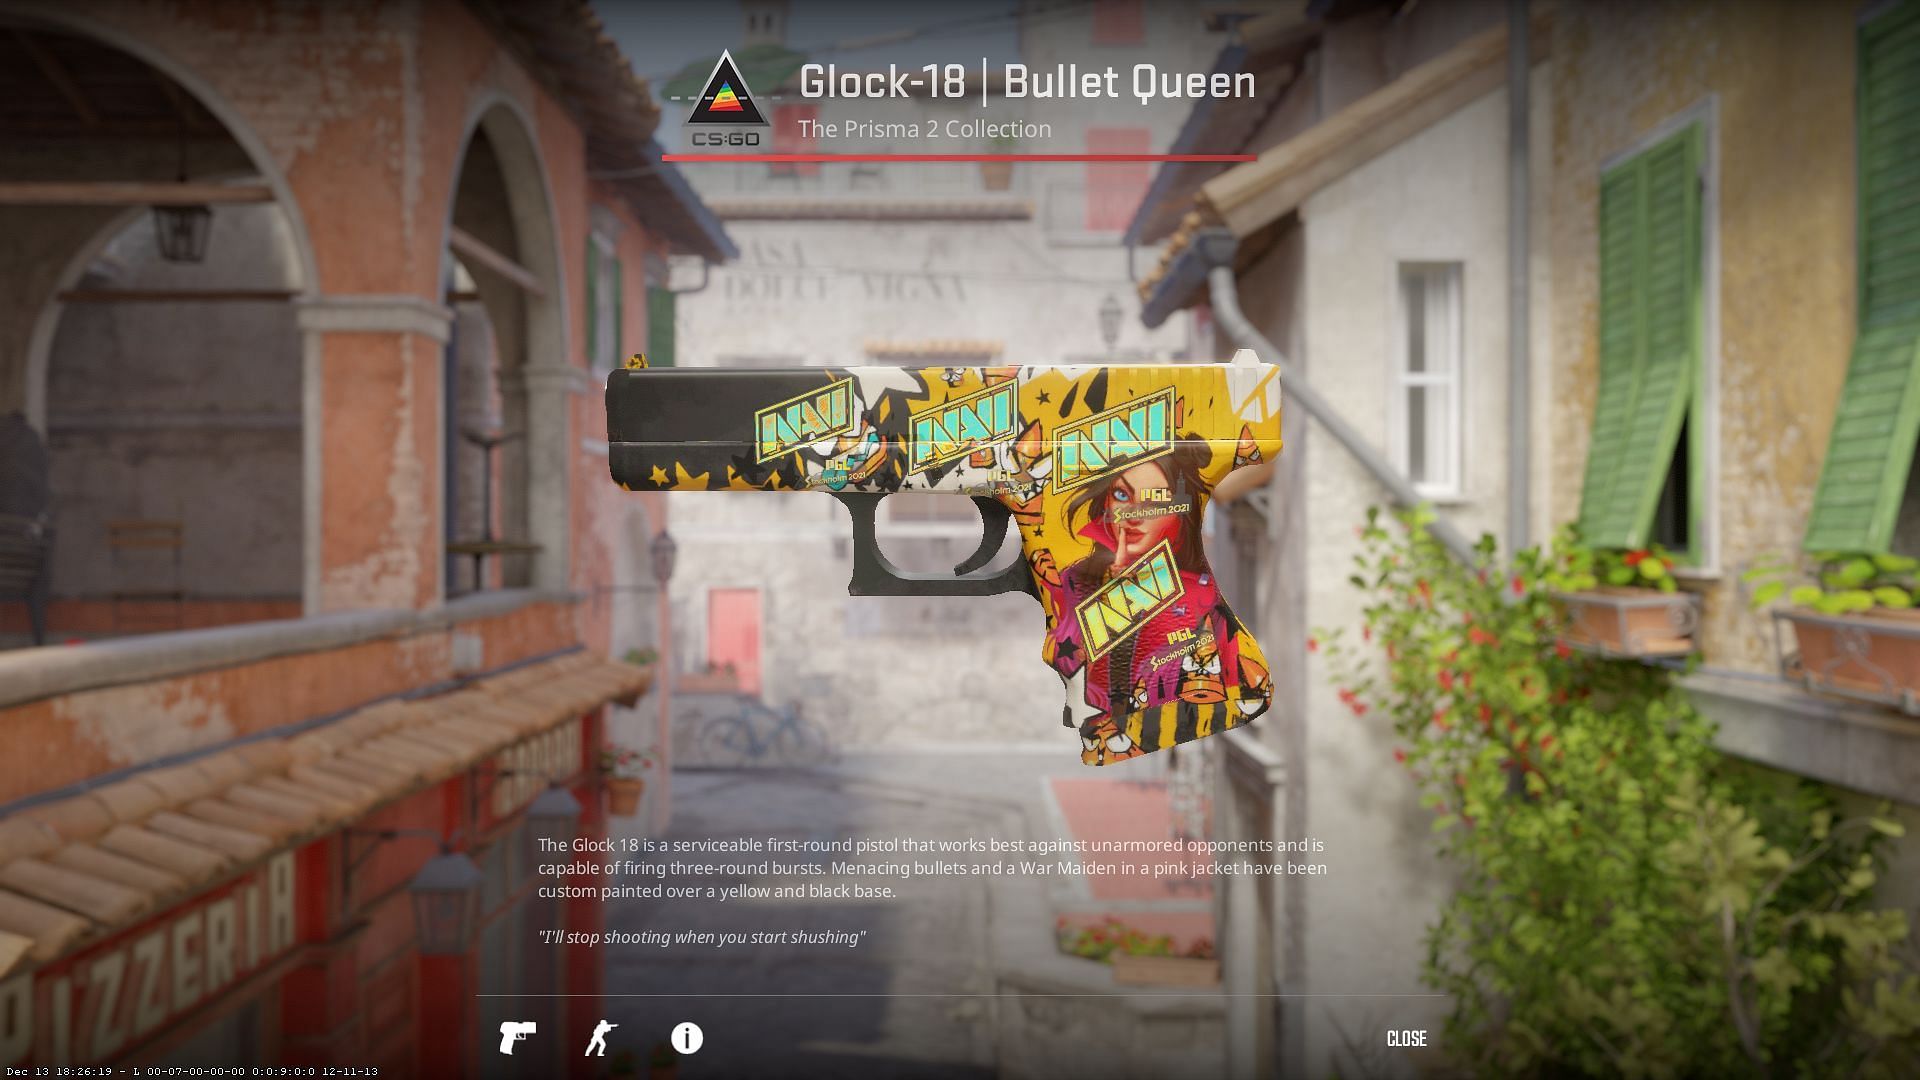 Glock-18 Bullet Queen (Image via Valve)